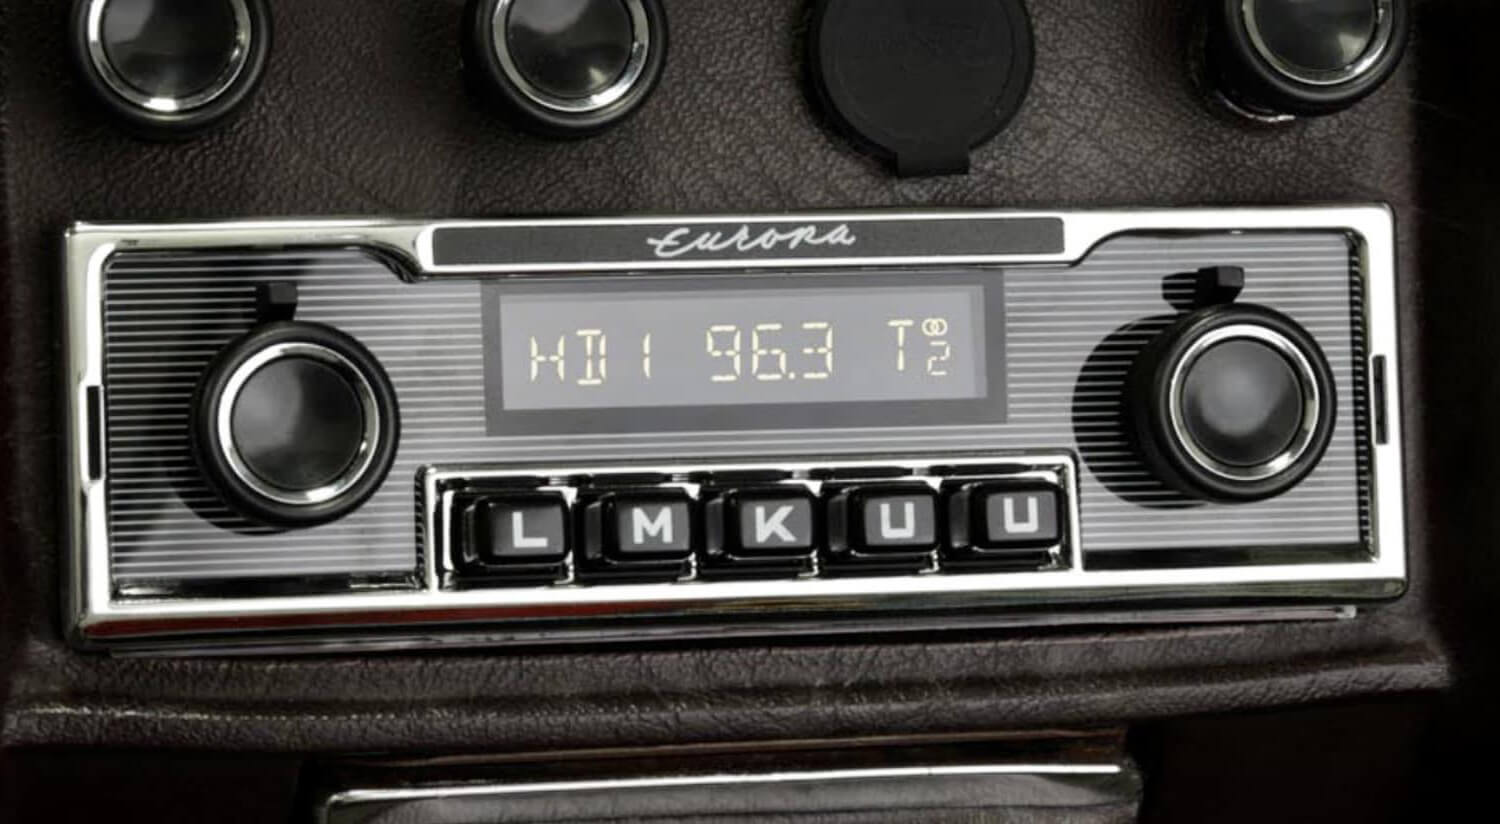 RADIO RETROSOUND MOTOR-6 DESIGN MEXICO RDS USB BLUETOOTH